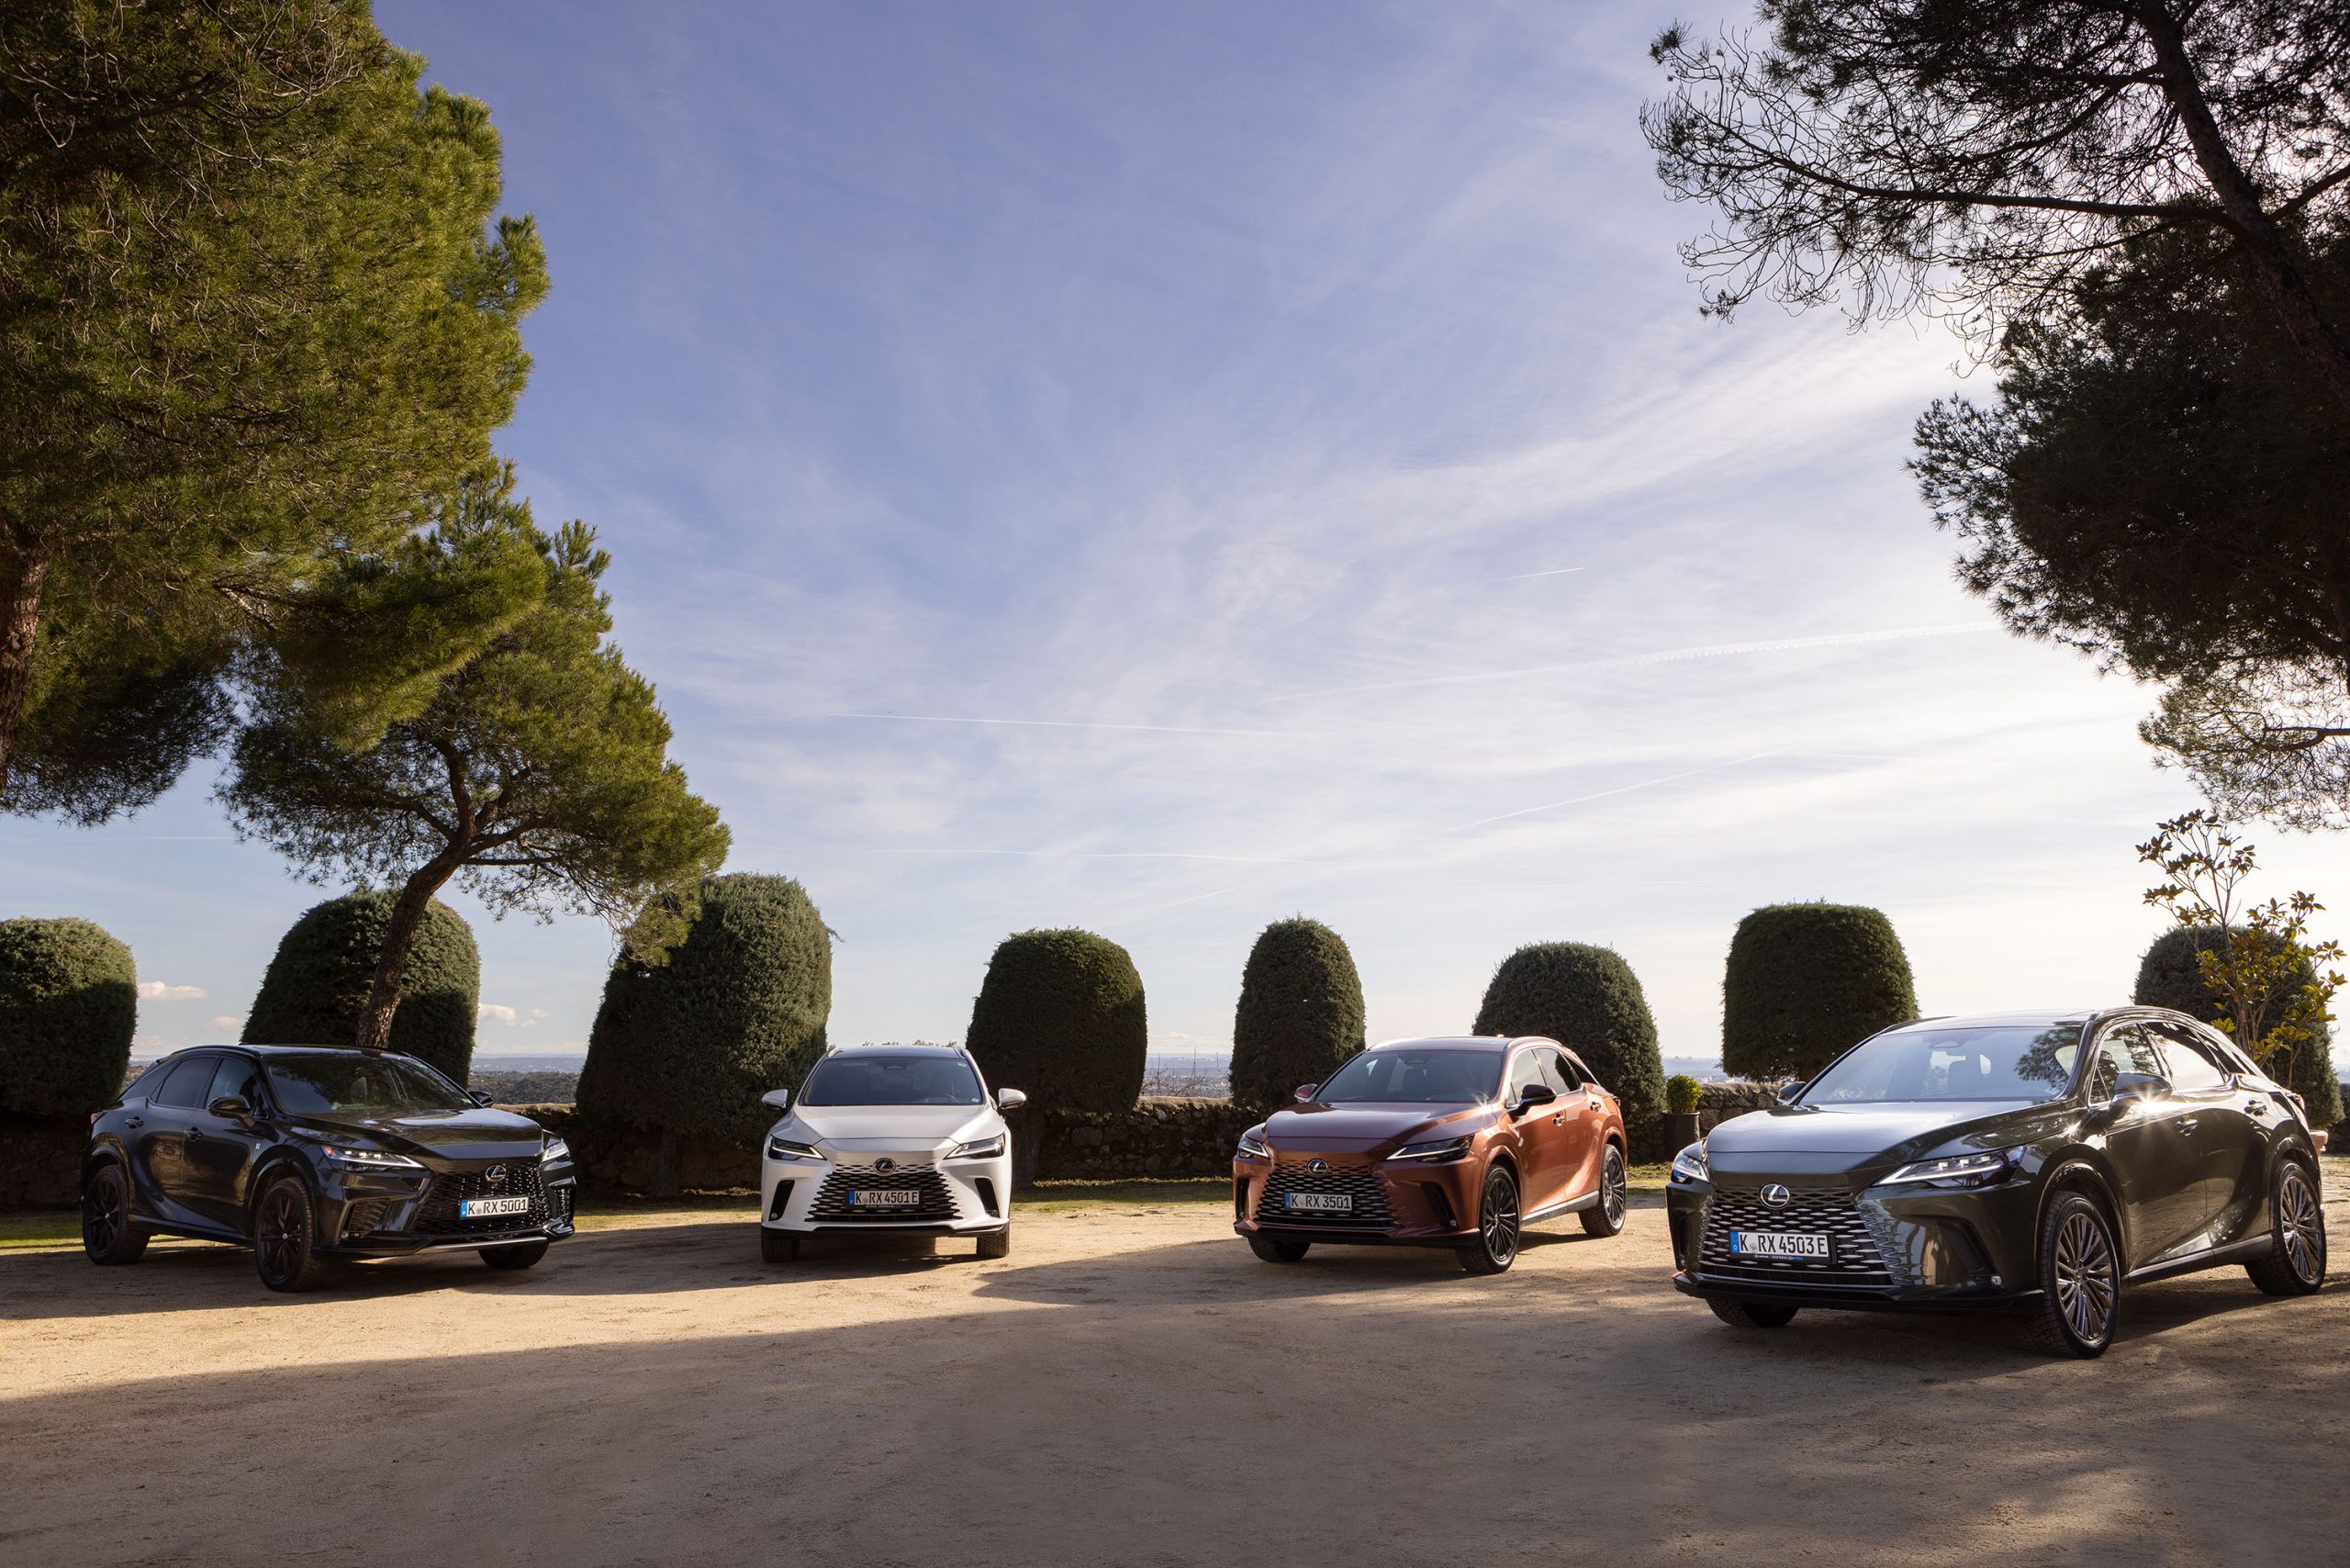 Galería: El Nuevo Lexus RX Llega a España